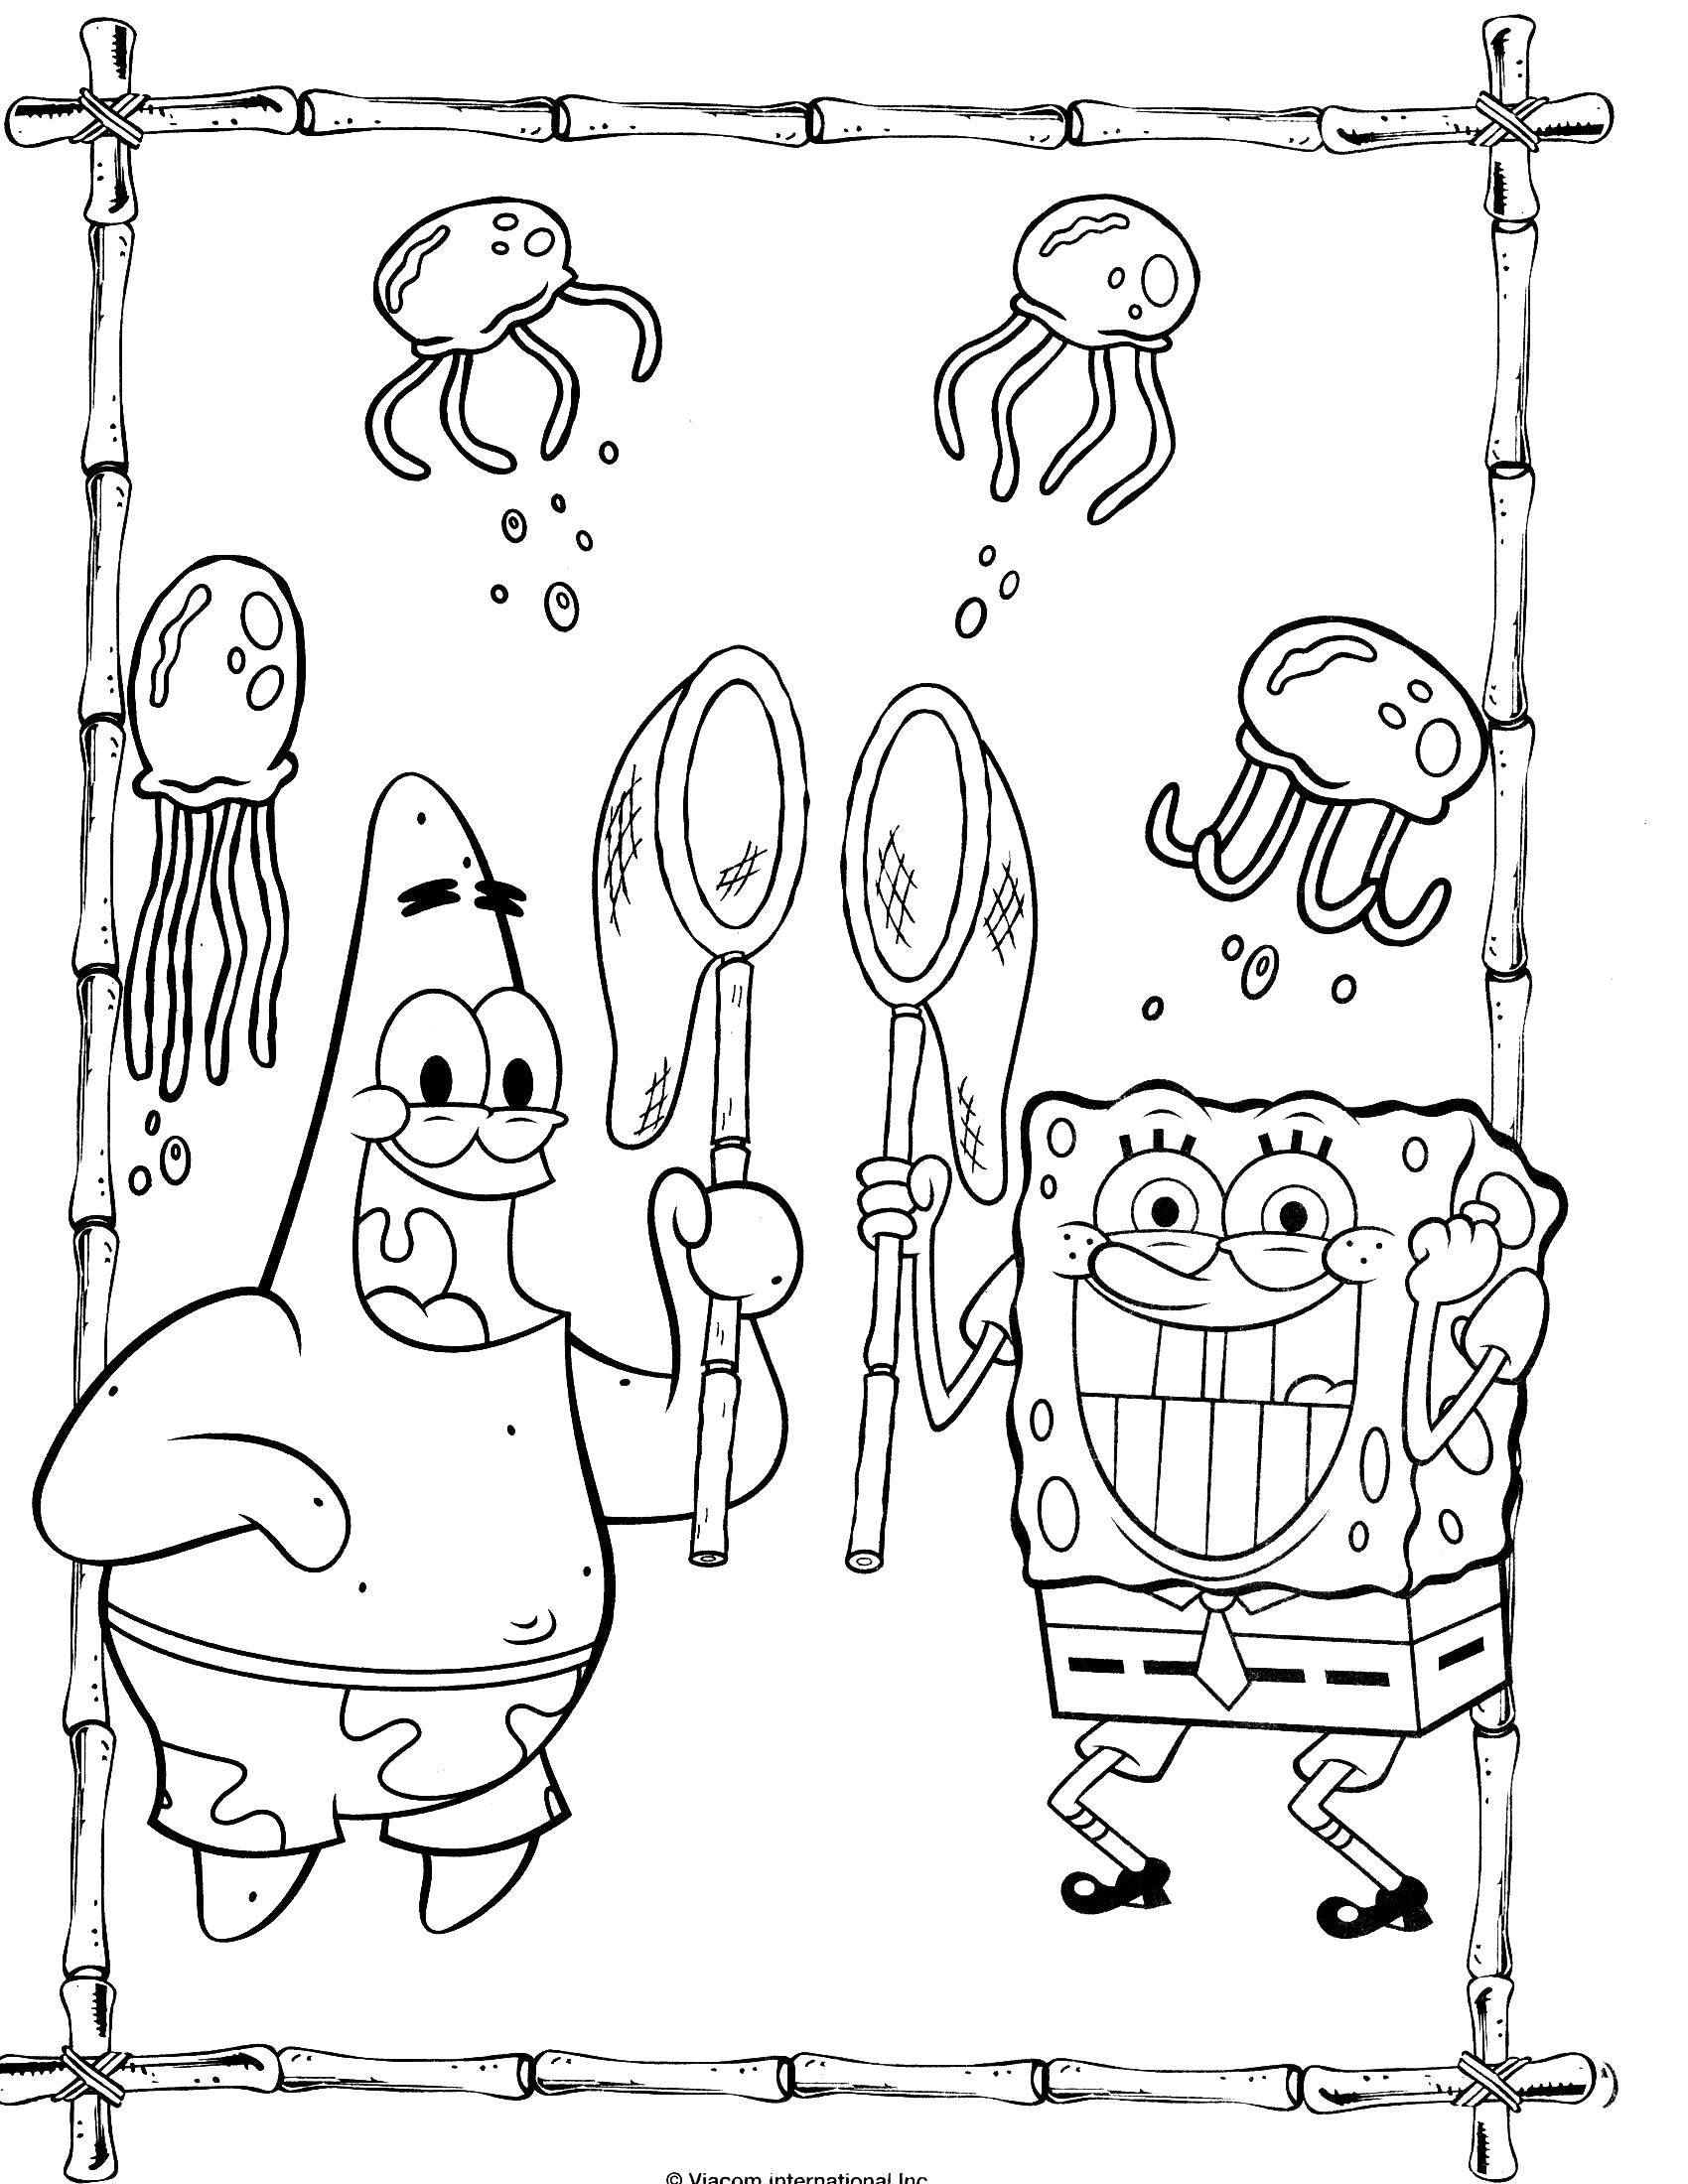 Раскраски Спанч Боб для малышей  Спанч боб и патрик охотятся на медуз